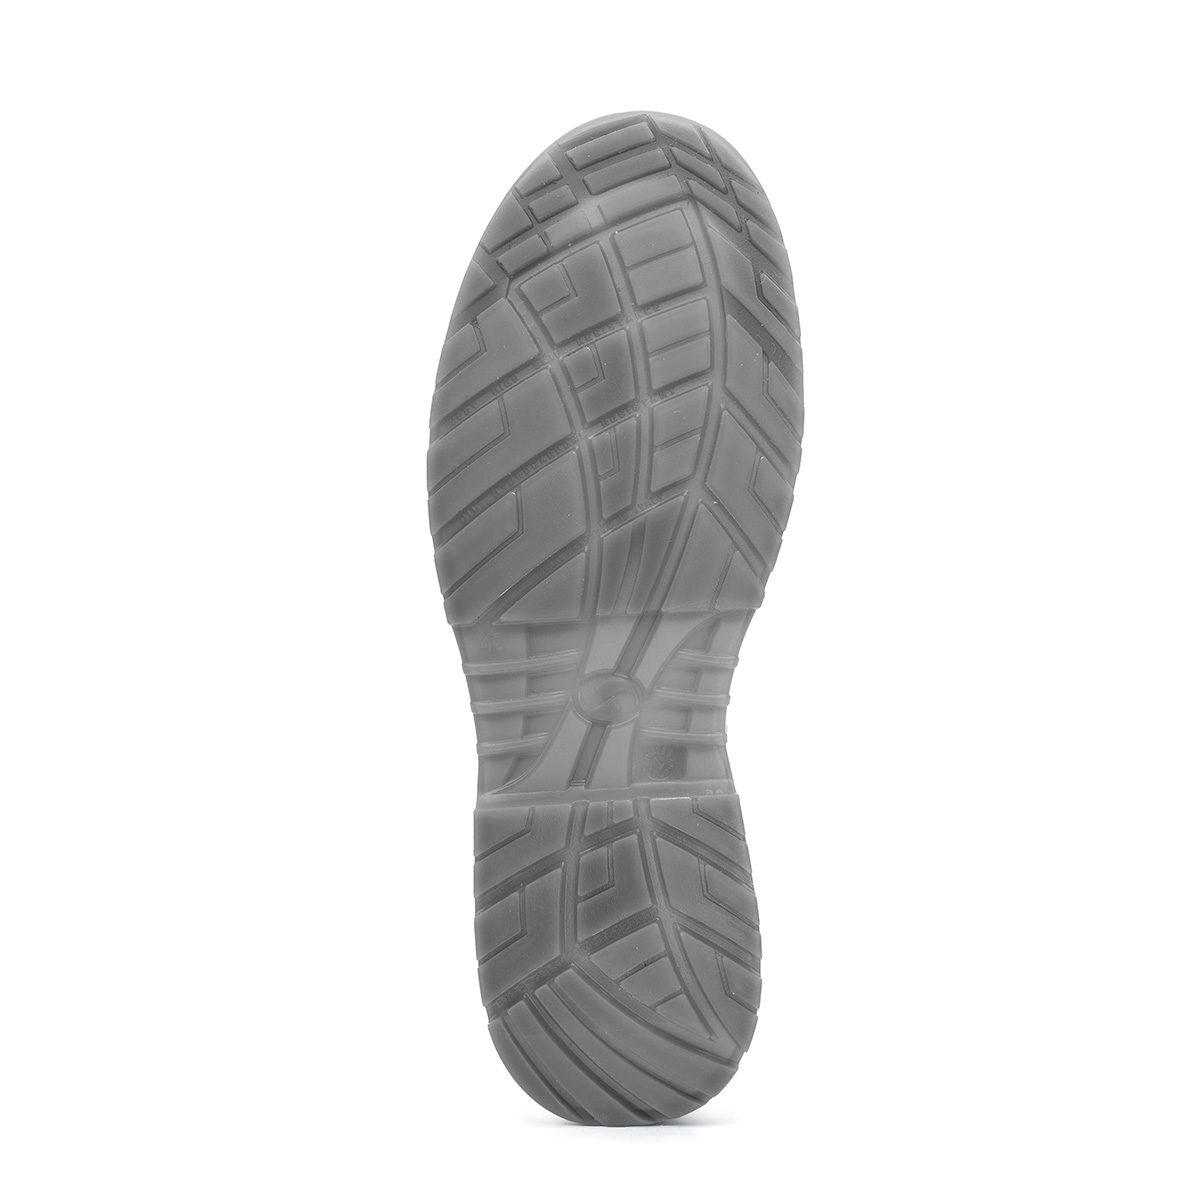 protezione Sixton Shoe - S2 di SRC Codice Safety Shoes Low - classe *CI modello 86203-00 Crystal VENEZIA con Peak